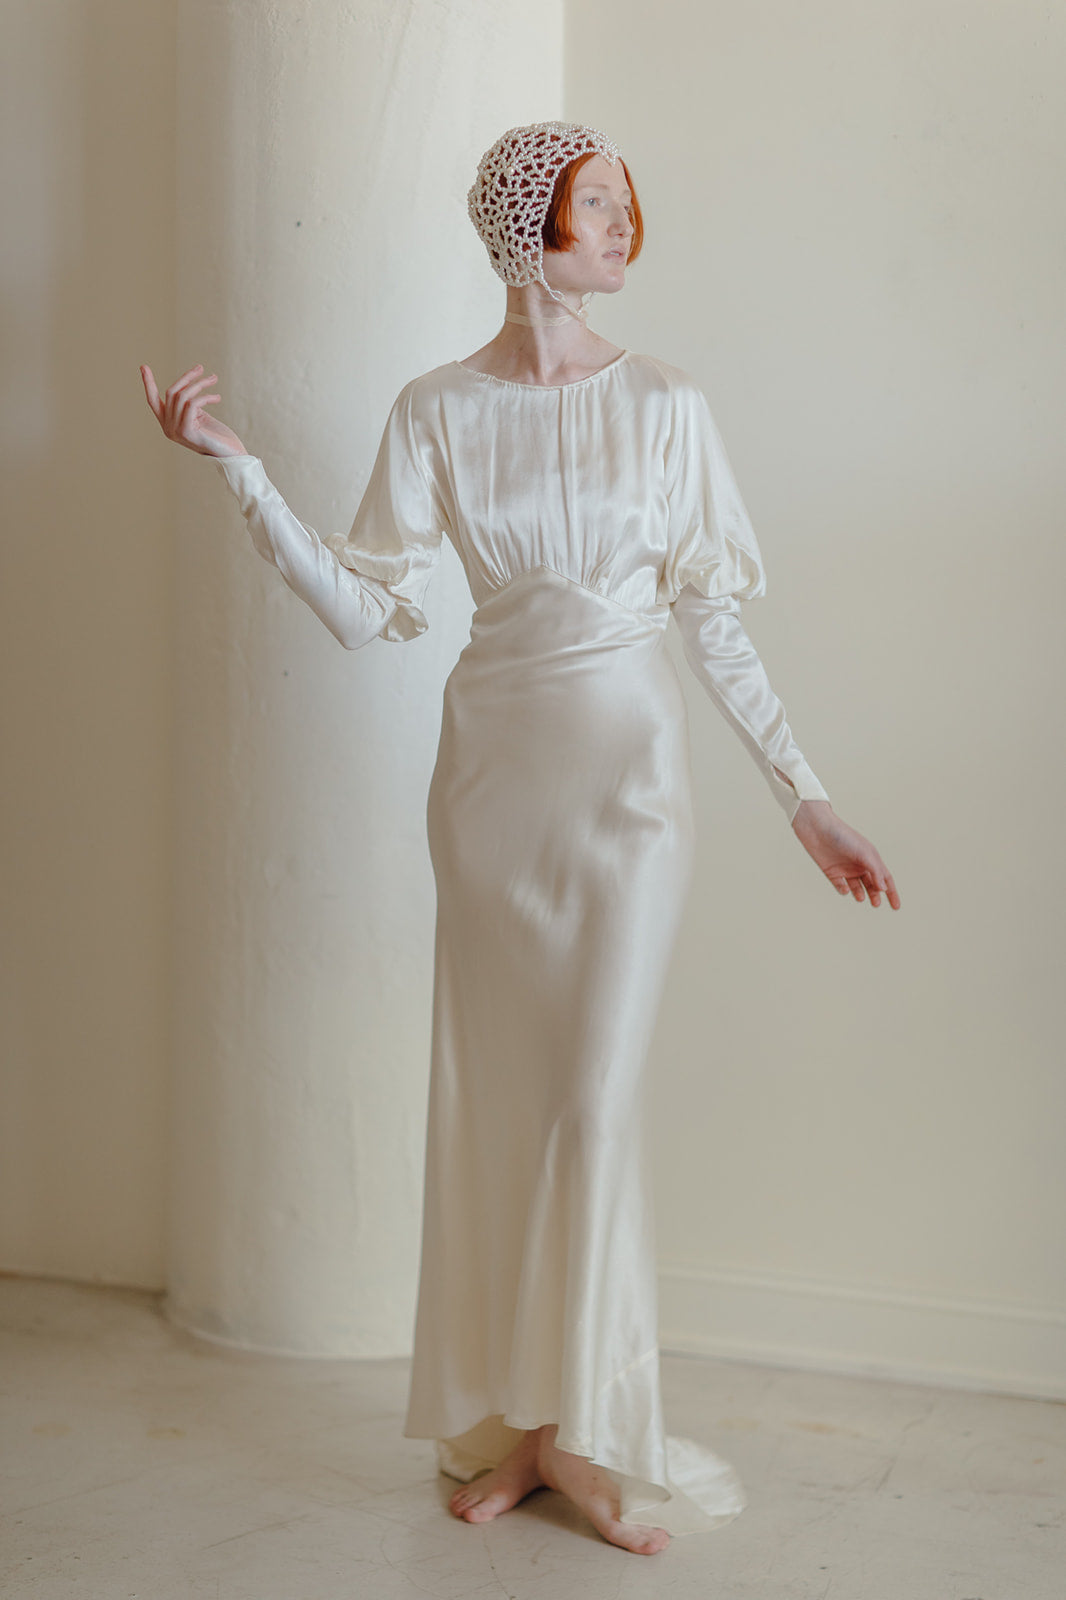 1930s bias trained silk satin Juliet sleeve wedding gown